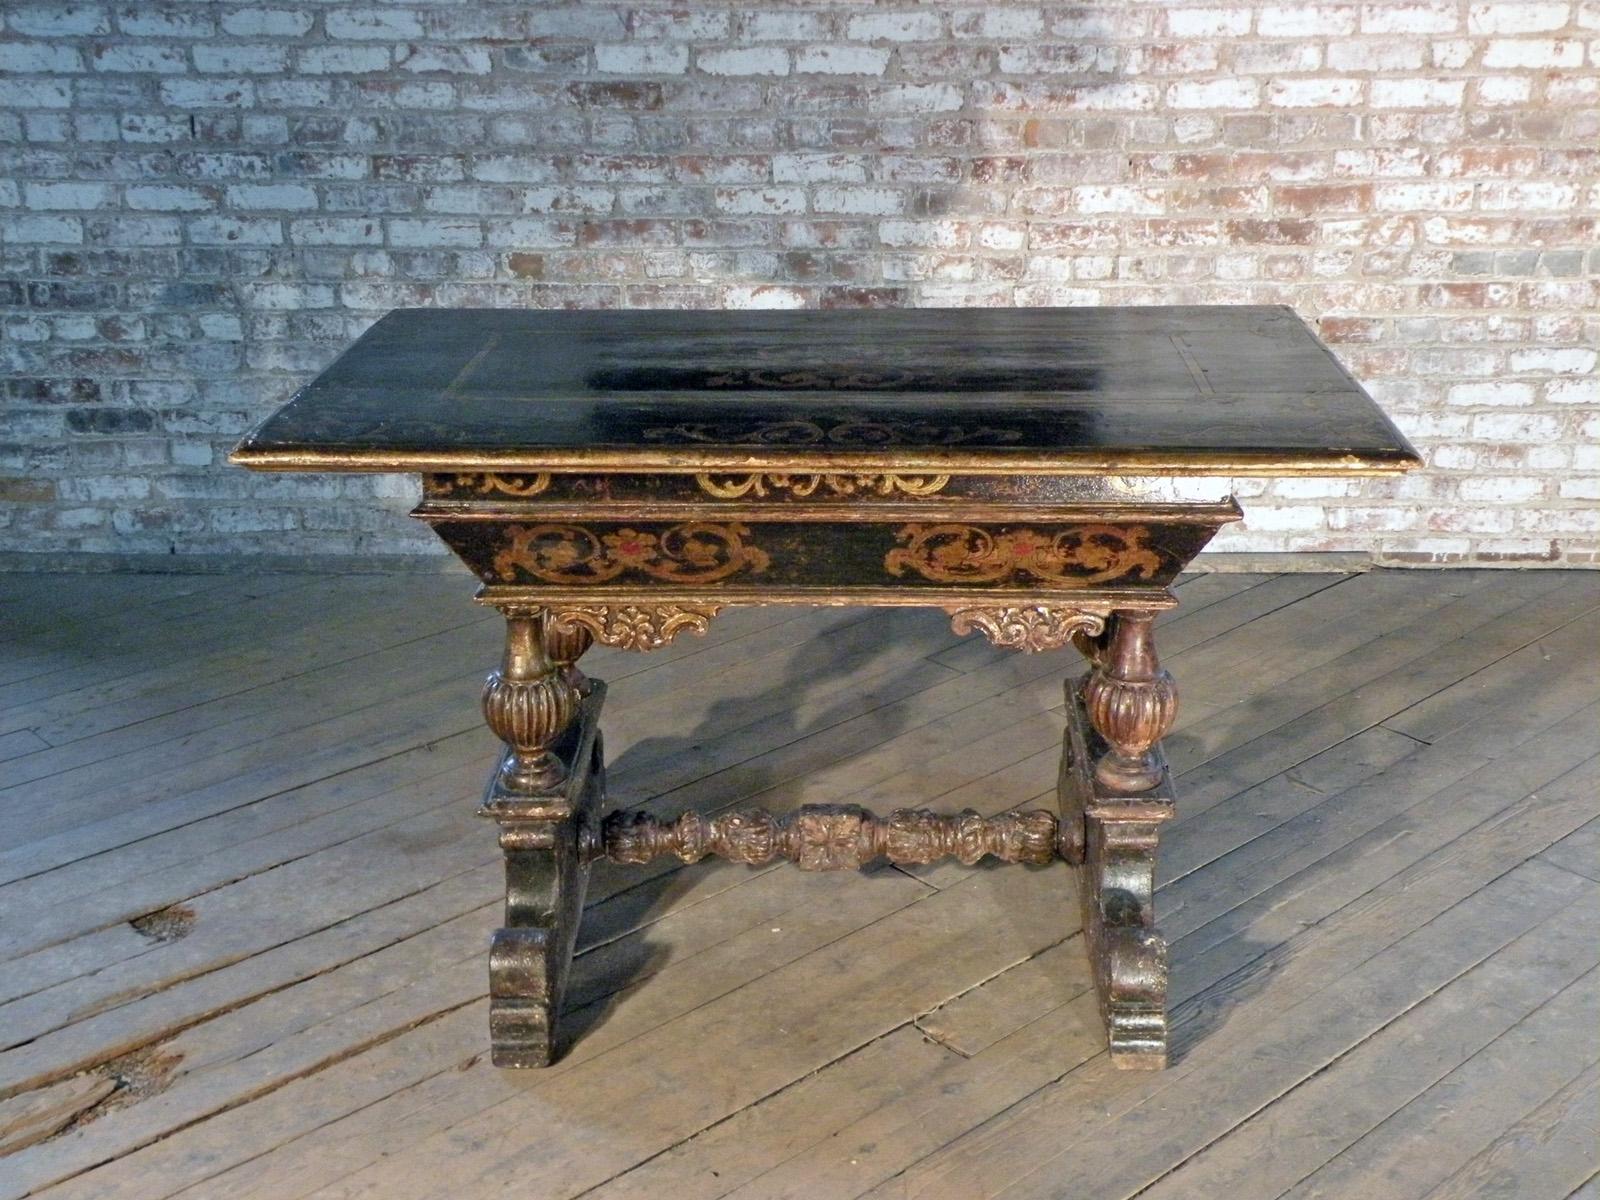 Auffallend dekorativer venezianischer Tisch von sehr ungewöhnlicher und seltener Form, frühes 17. Jahrhundert.
Die längliche geformte Oberseite ist mit vergoldetem Dekor verziert, über einem doppelten Fries mit floralen Ornamenten, gestützt von